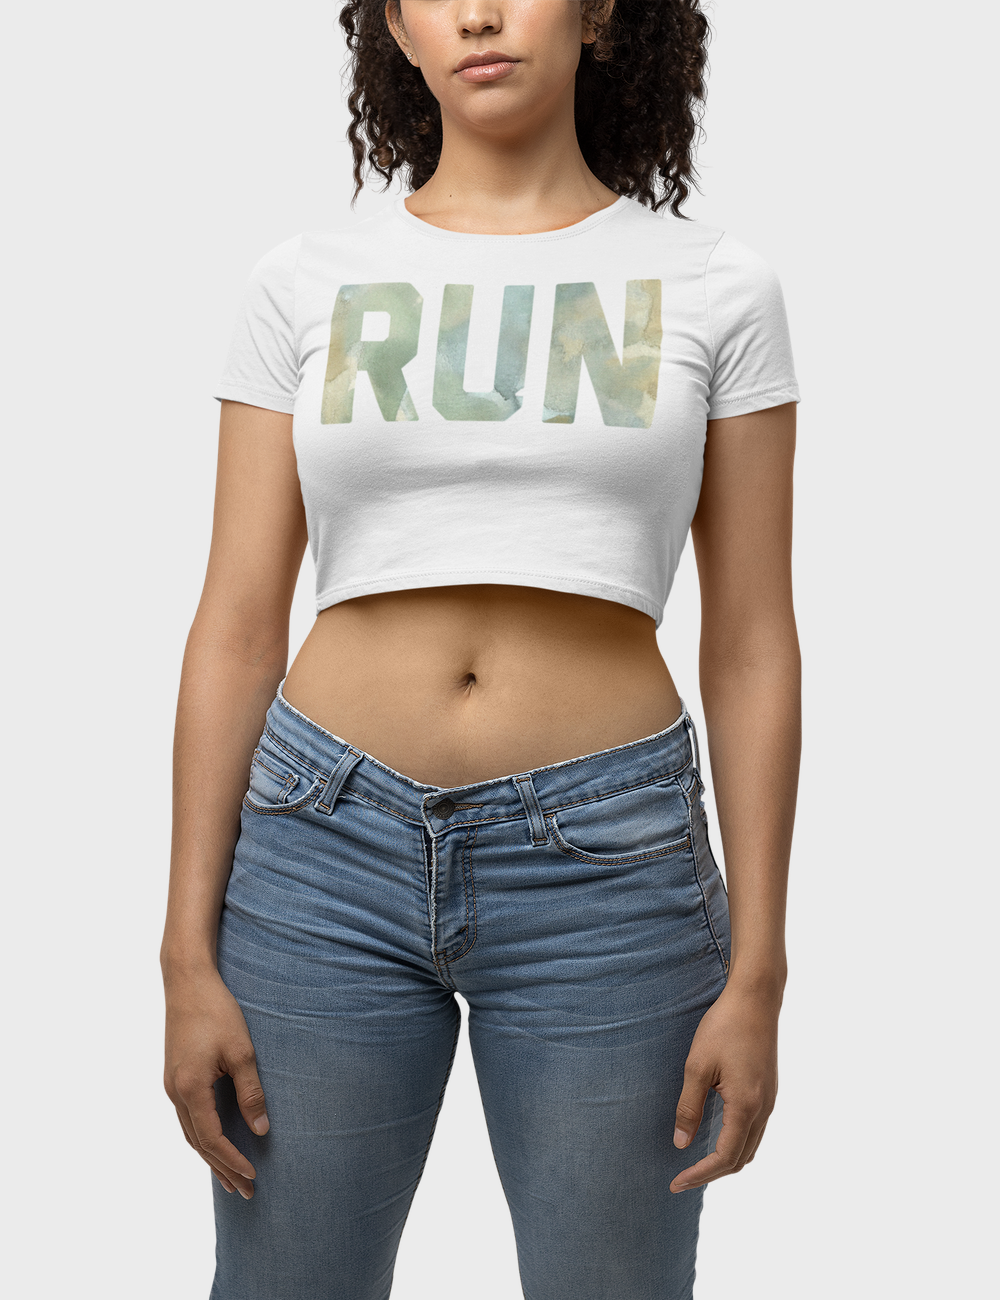 Run | Women's Fitted Crop Top T-Shirt OniTakai